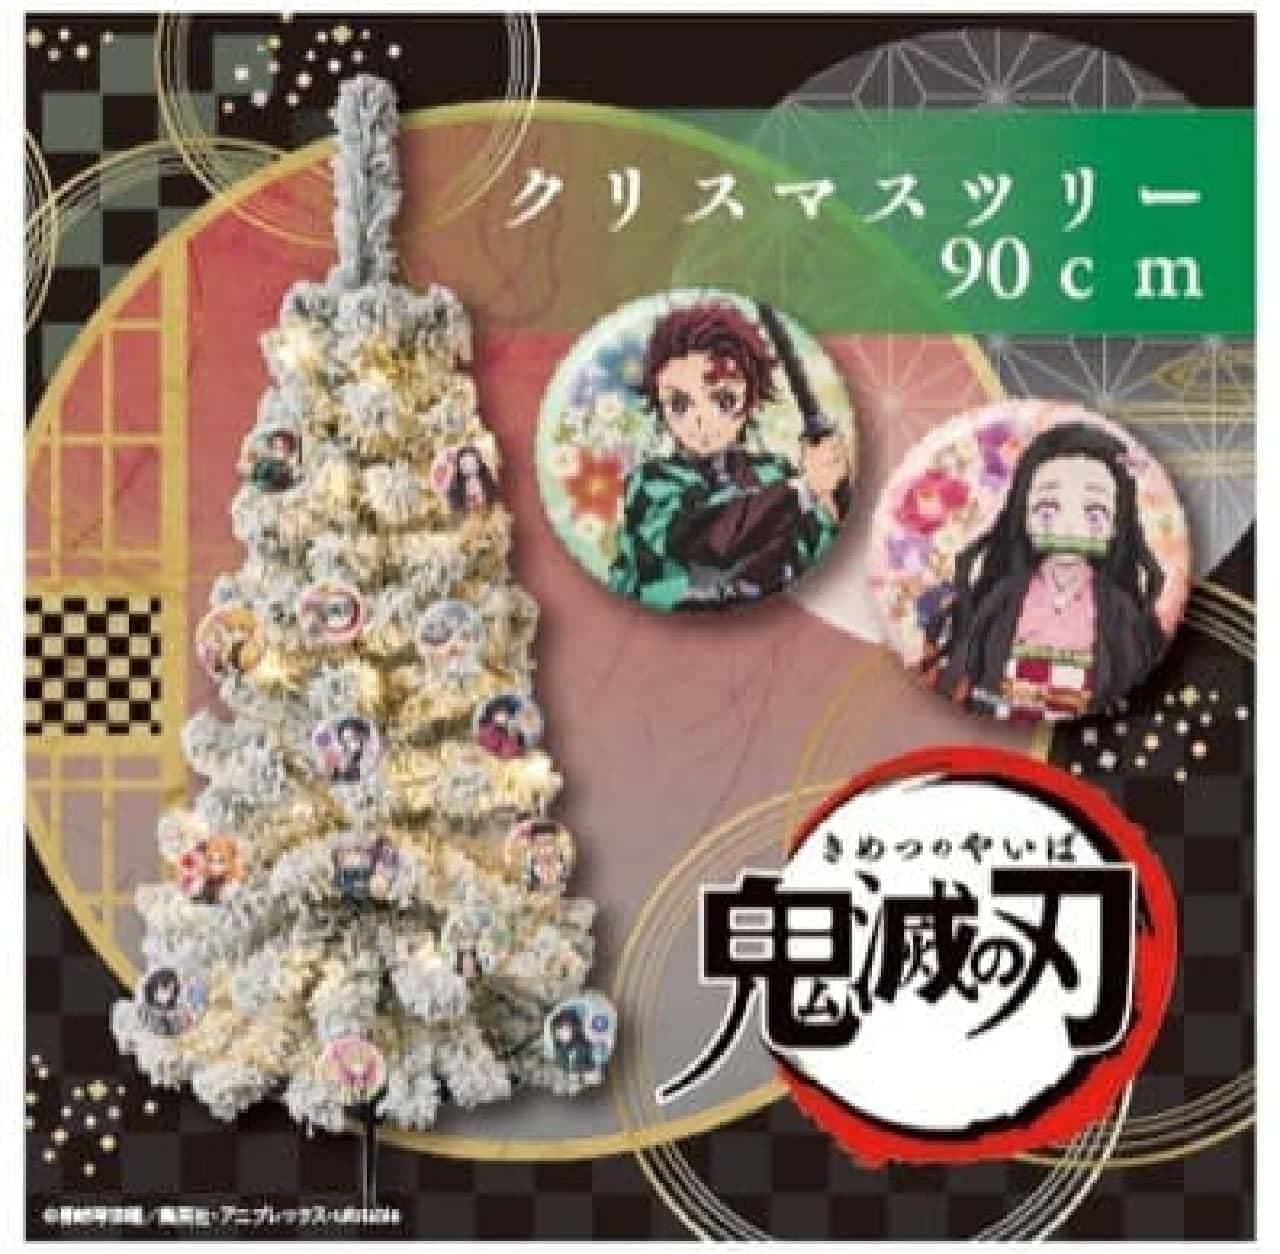 「鬼滅の刃 90cmクリスマスツリー」発売 -- テレビアニメ「鬼滅の刃」雪景色イメージ！缶バッジで飾り付け